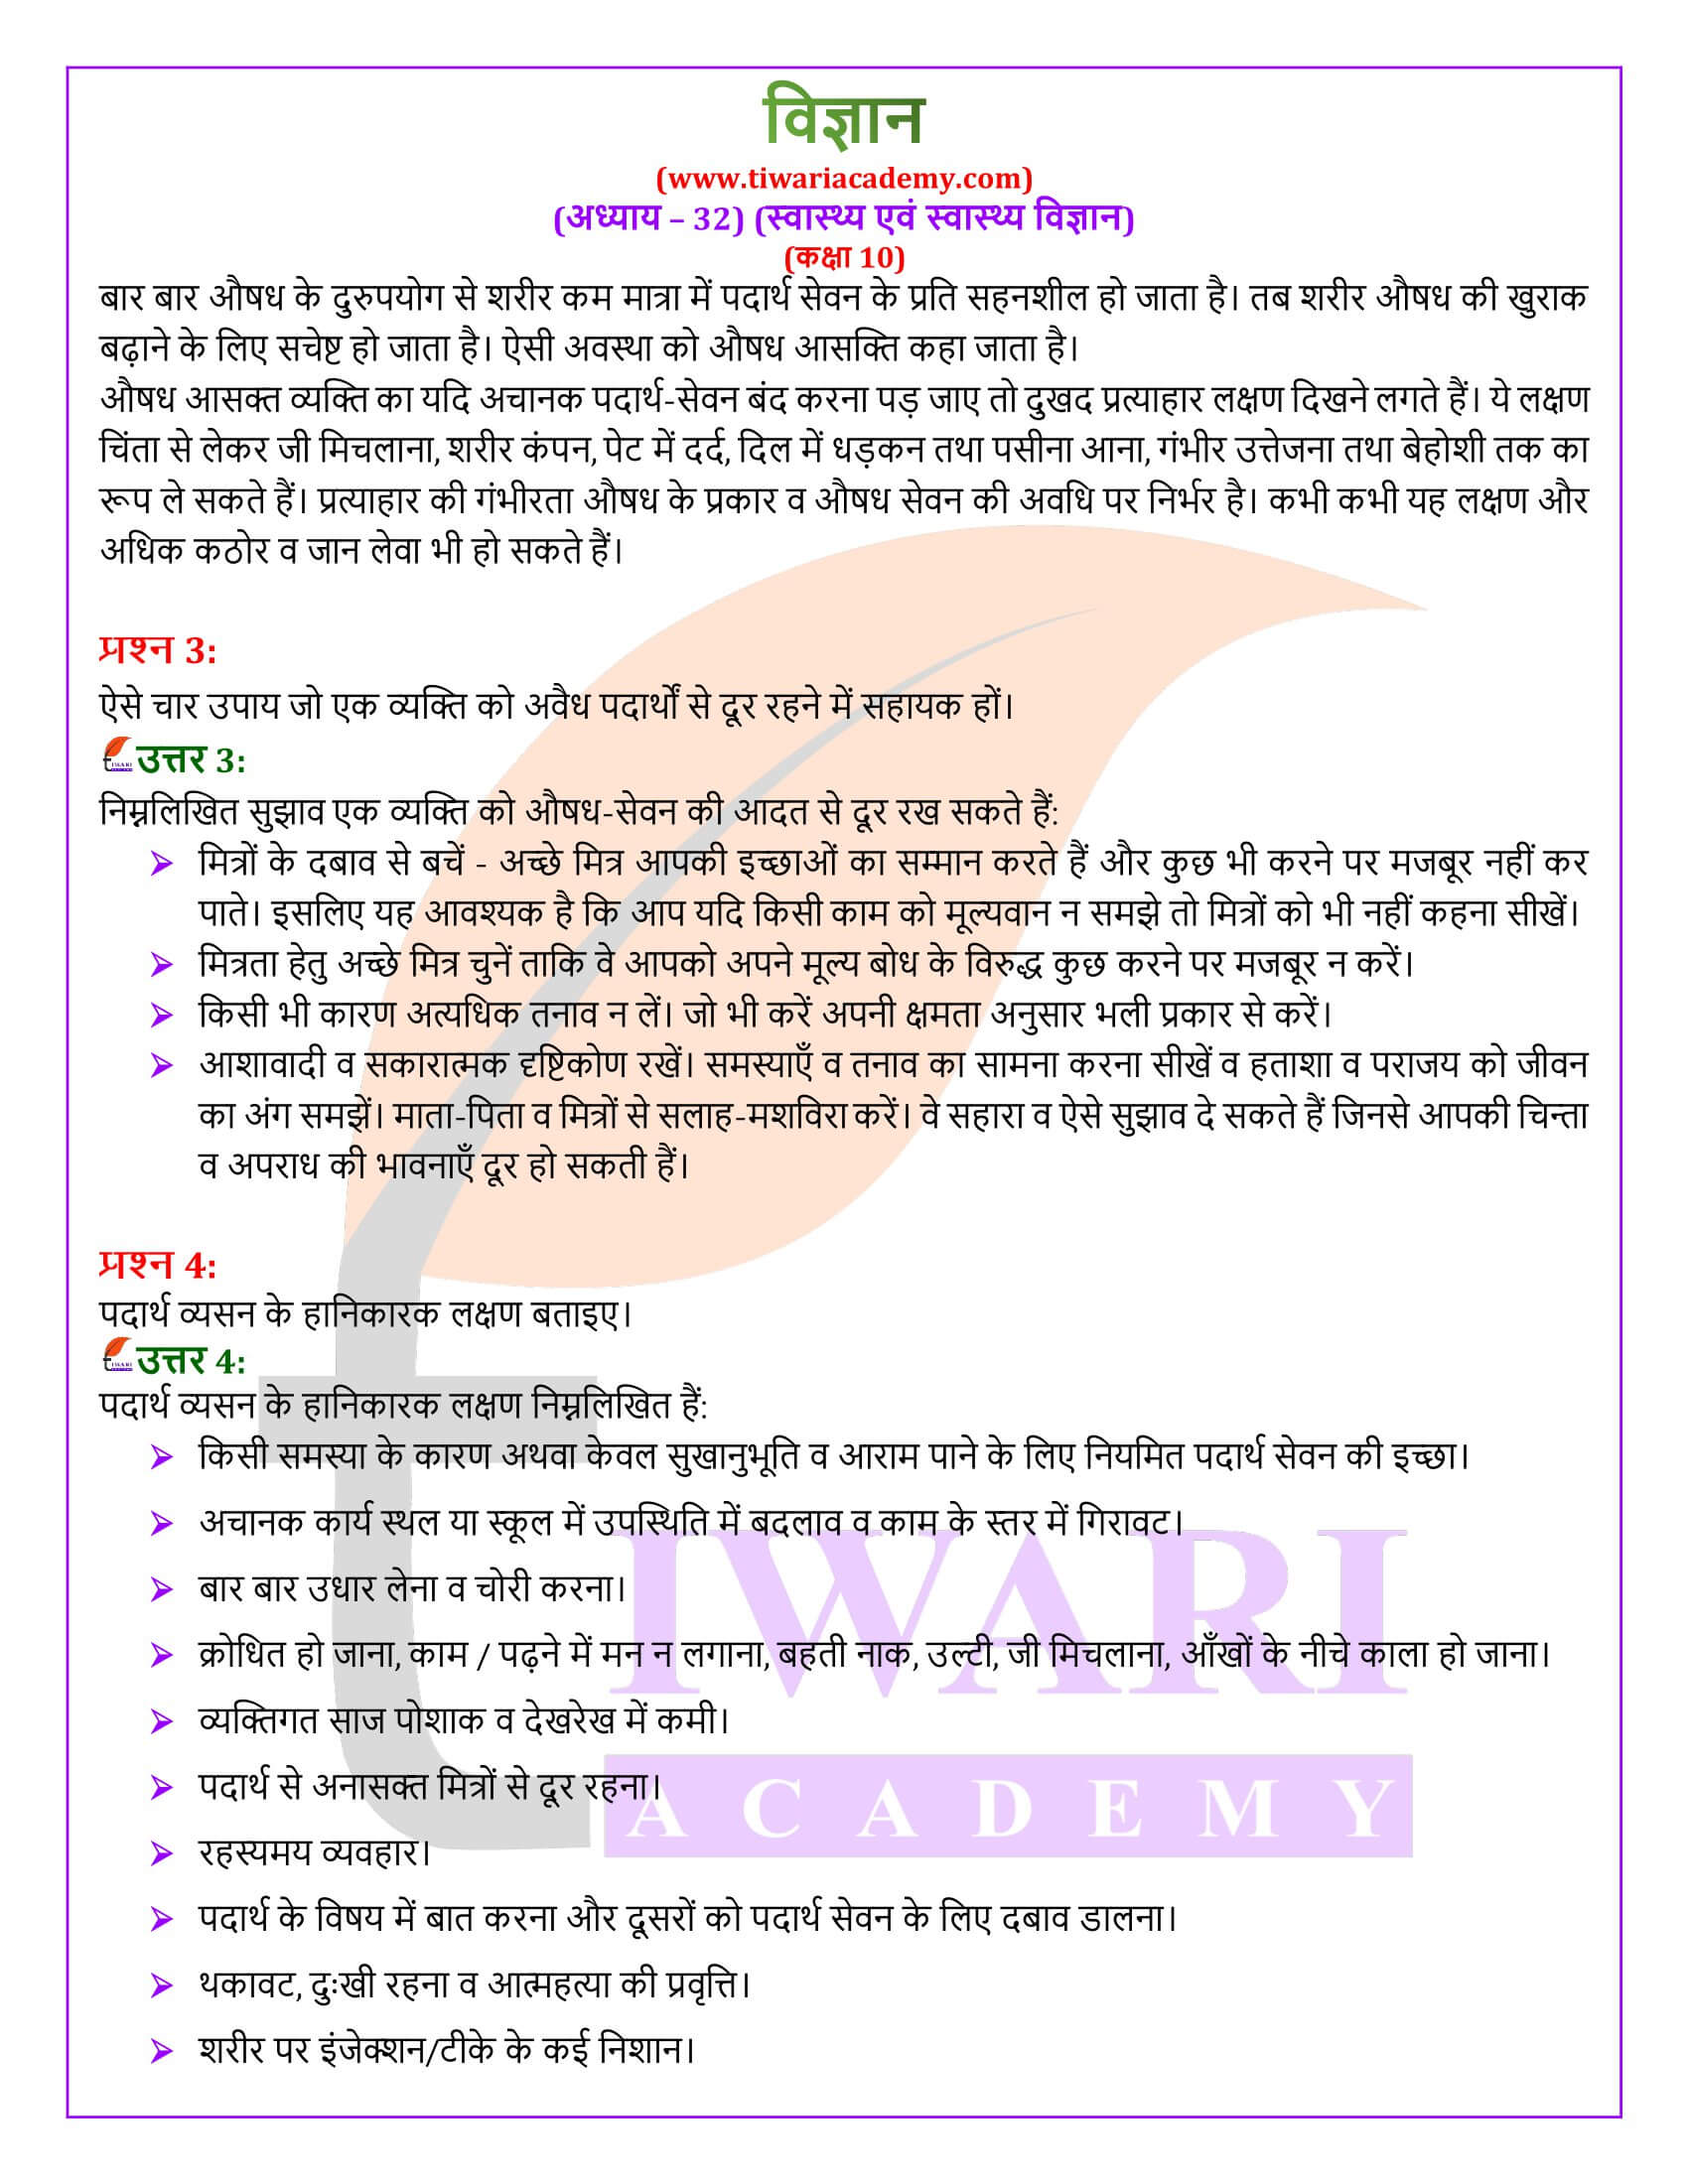 NIOS कक्षा 10 विज्ञान अध्याय 32 हिंदी में गाइड